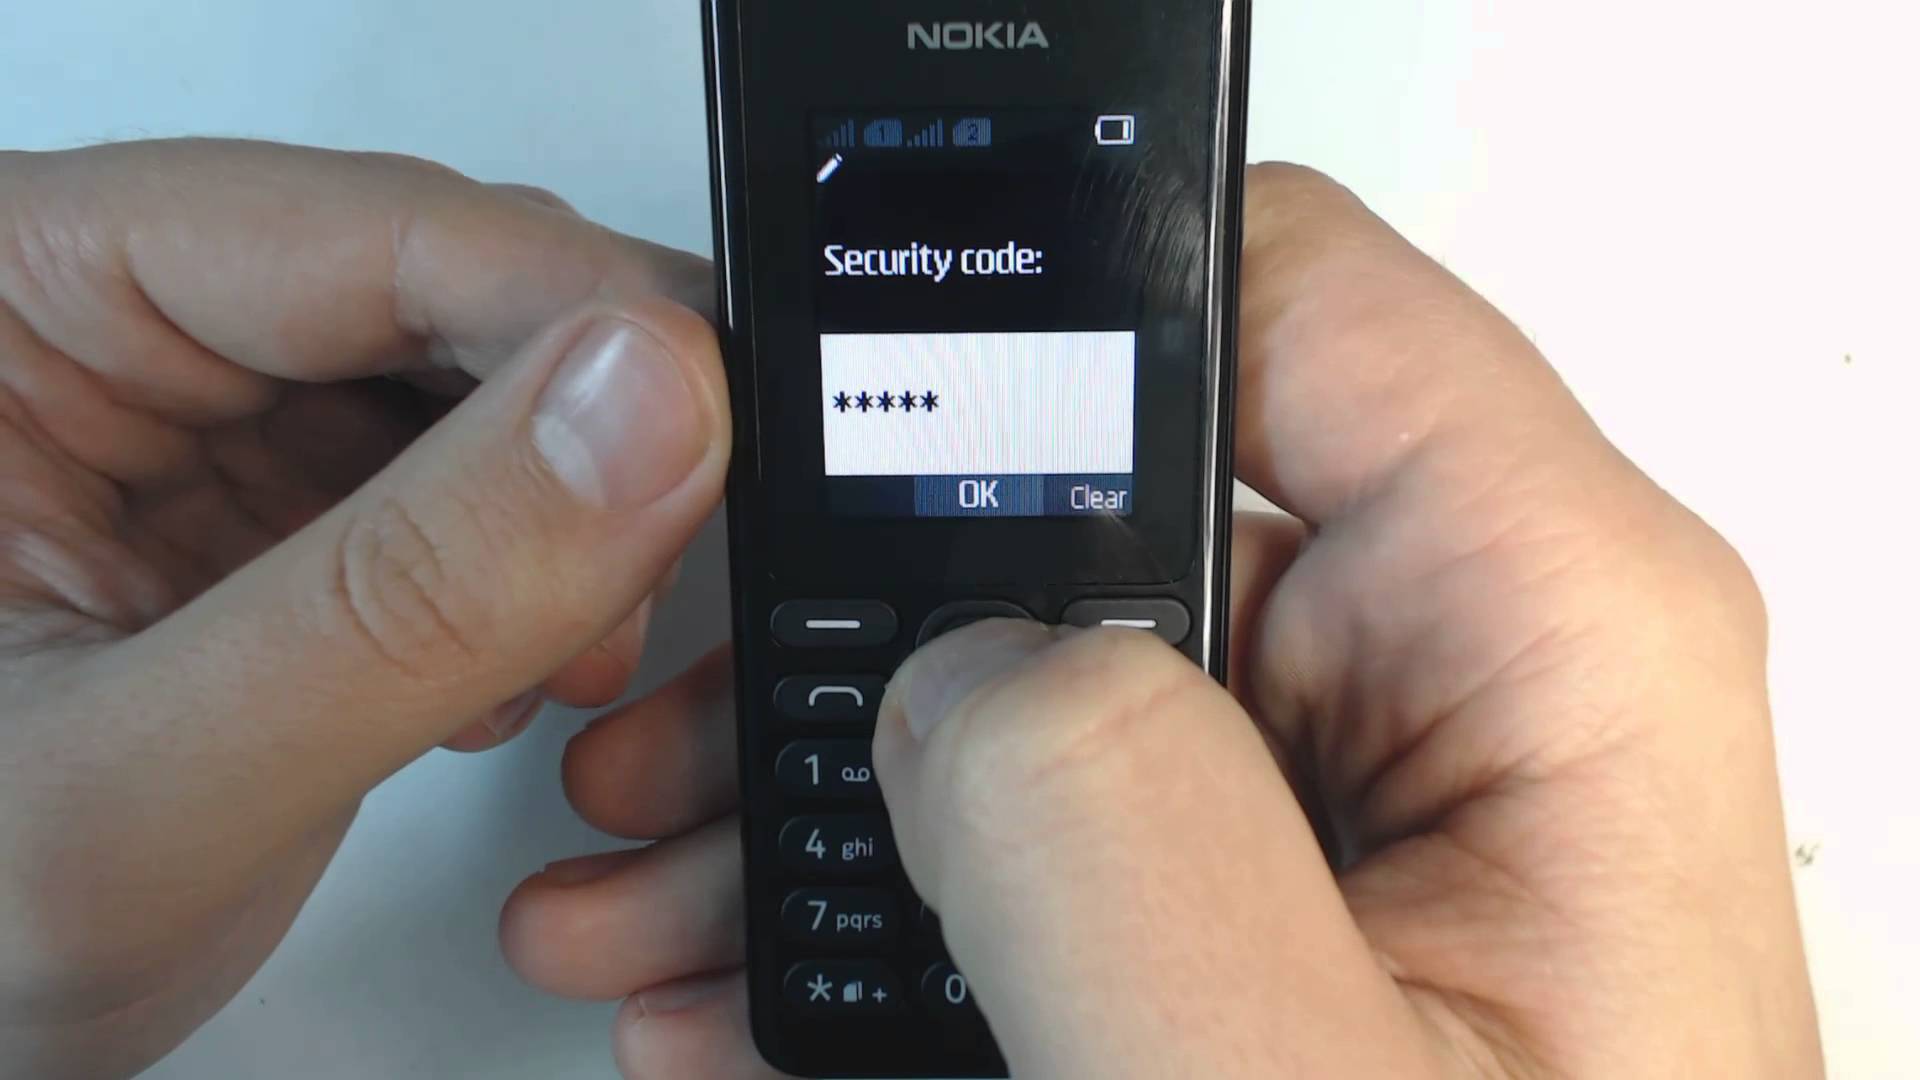 Пин код нокиа. Пин код телефона нокиа кнопочный 105. Защитный код Nokia кнопочный. Защитный код нокиа 105. Телефон Nokia 108 Dual SIM.